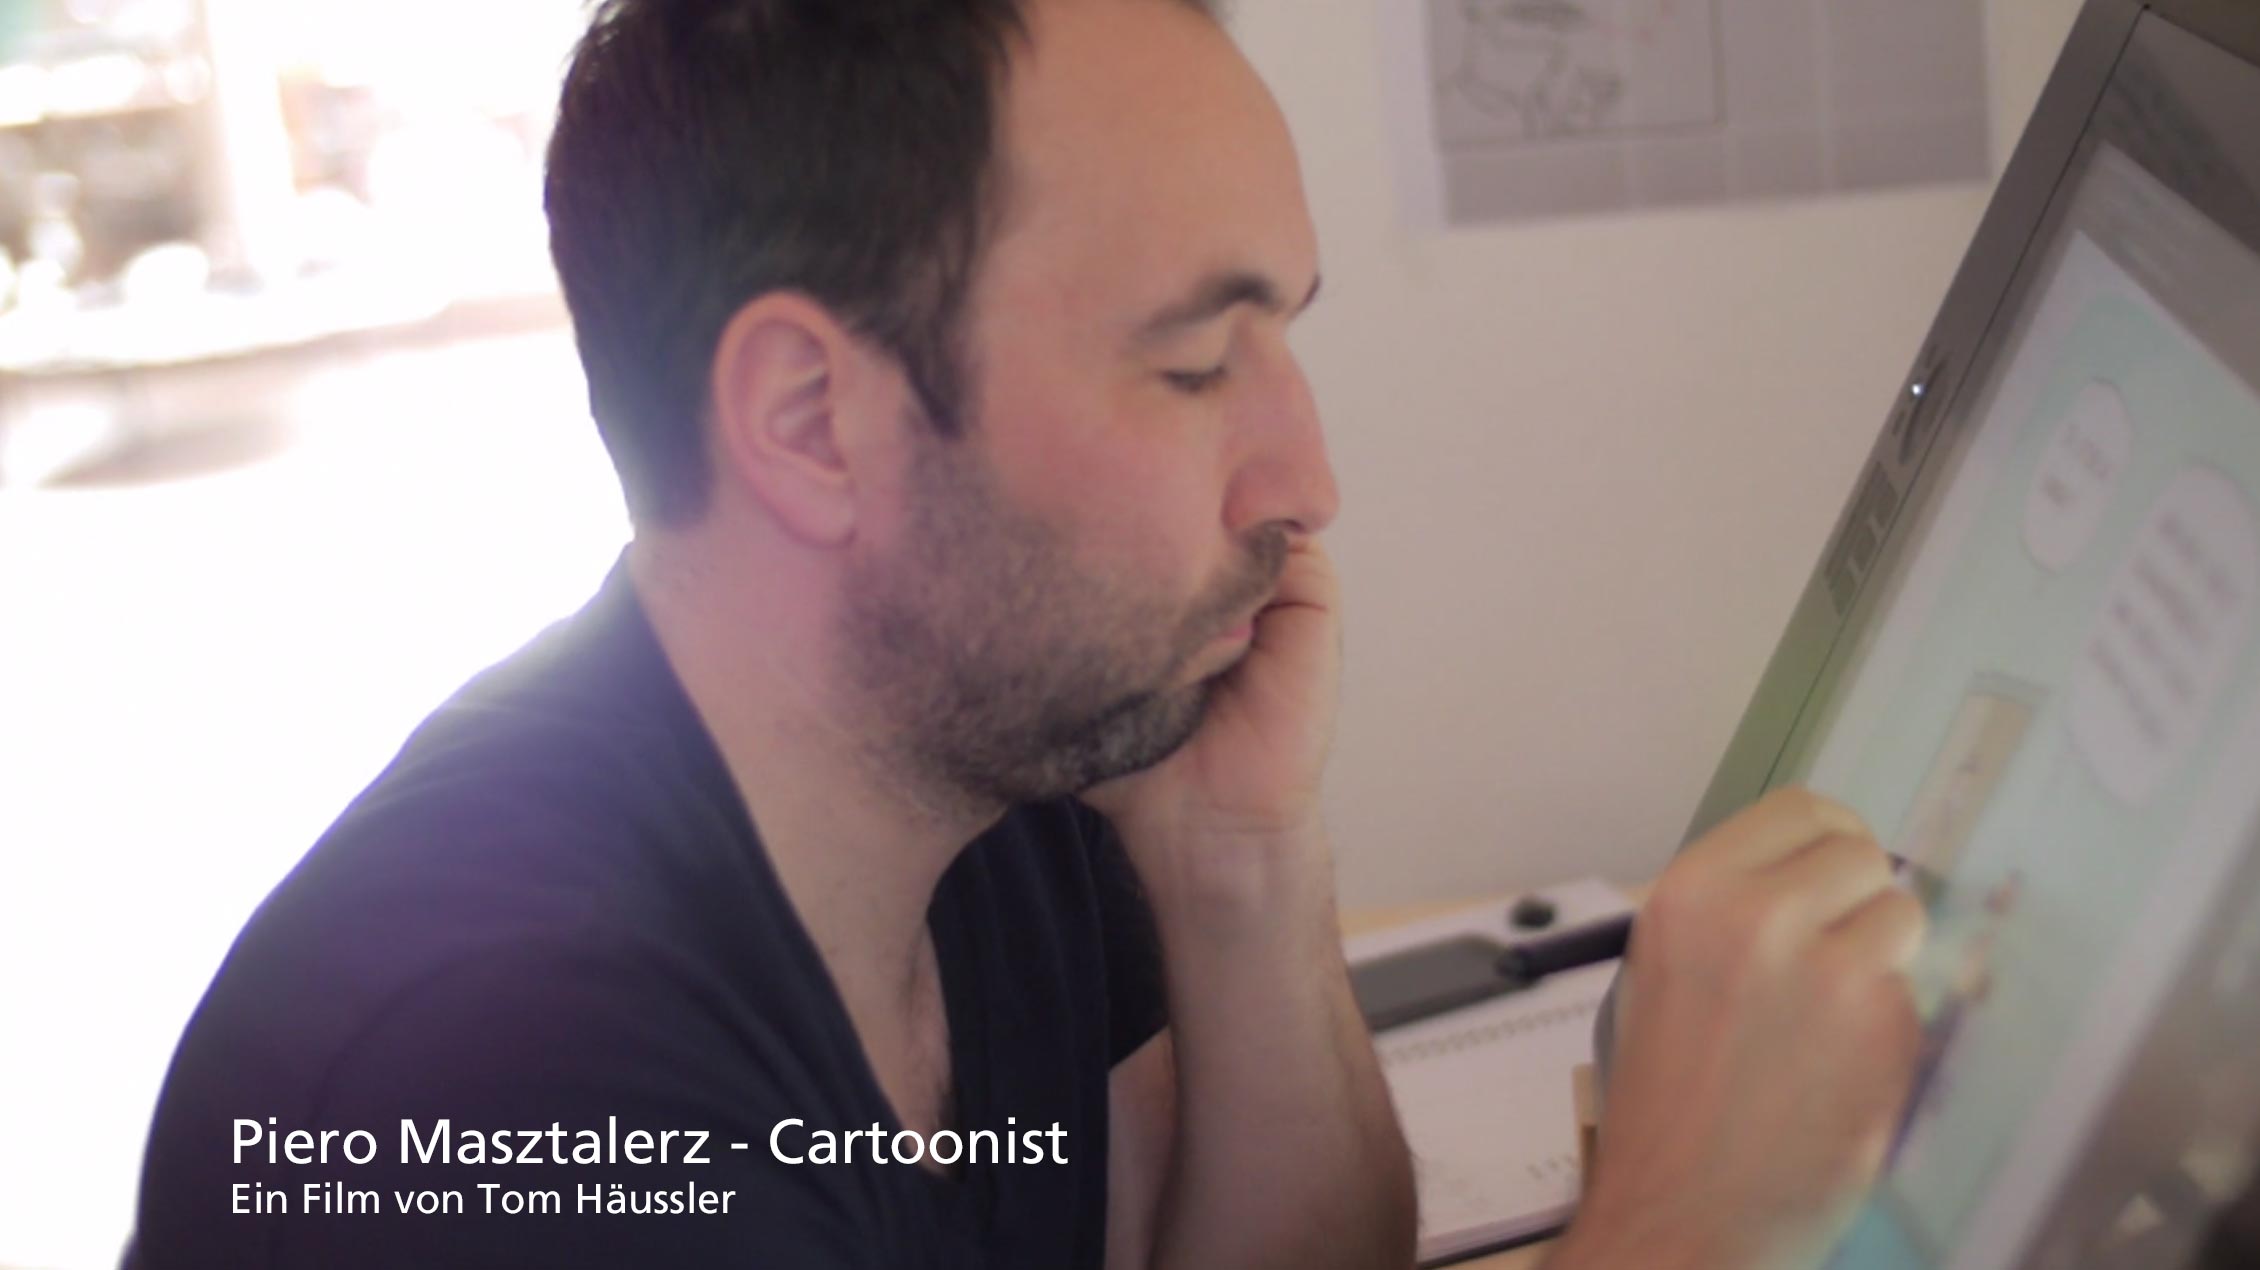 Piero Masztalerz – Cartoonist (VIMEO VIDEO)